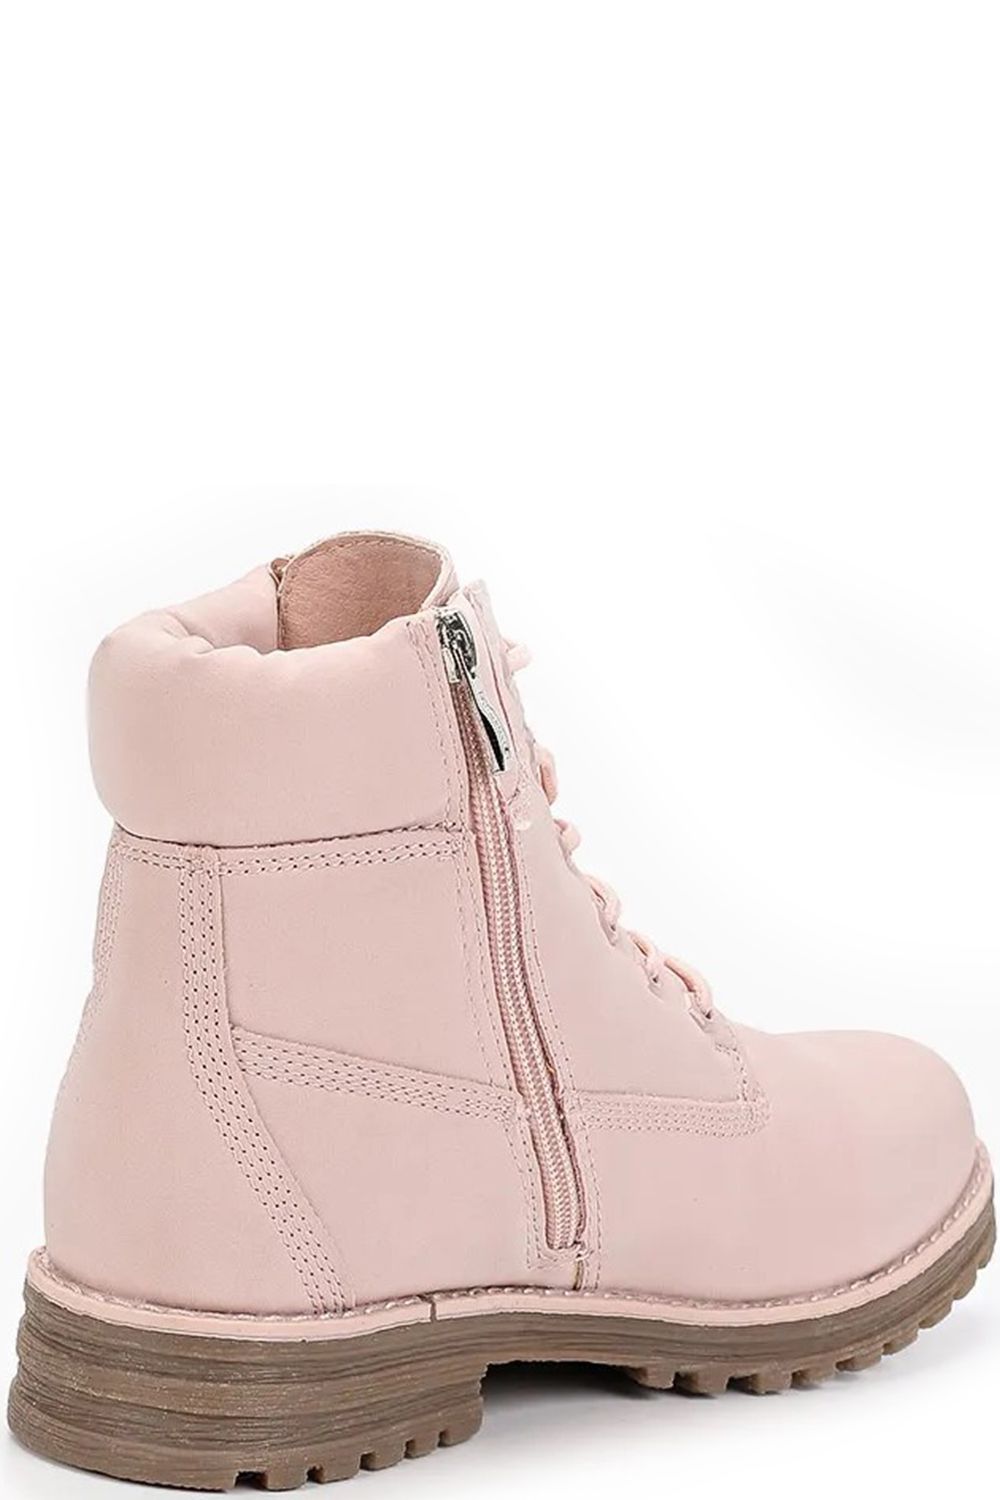 Ботинки Keddo, размер 33, цвет розовый 598127/05-01 - фото 4